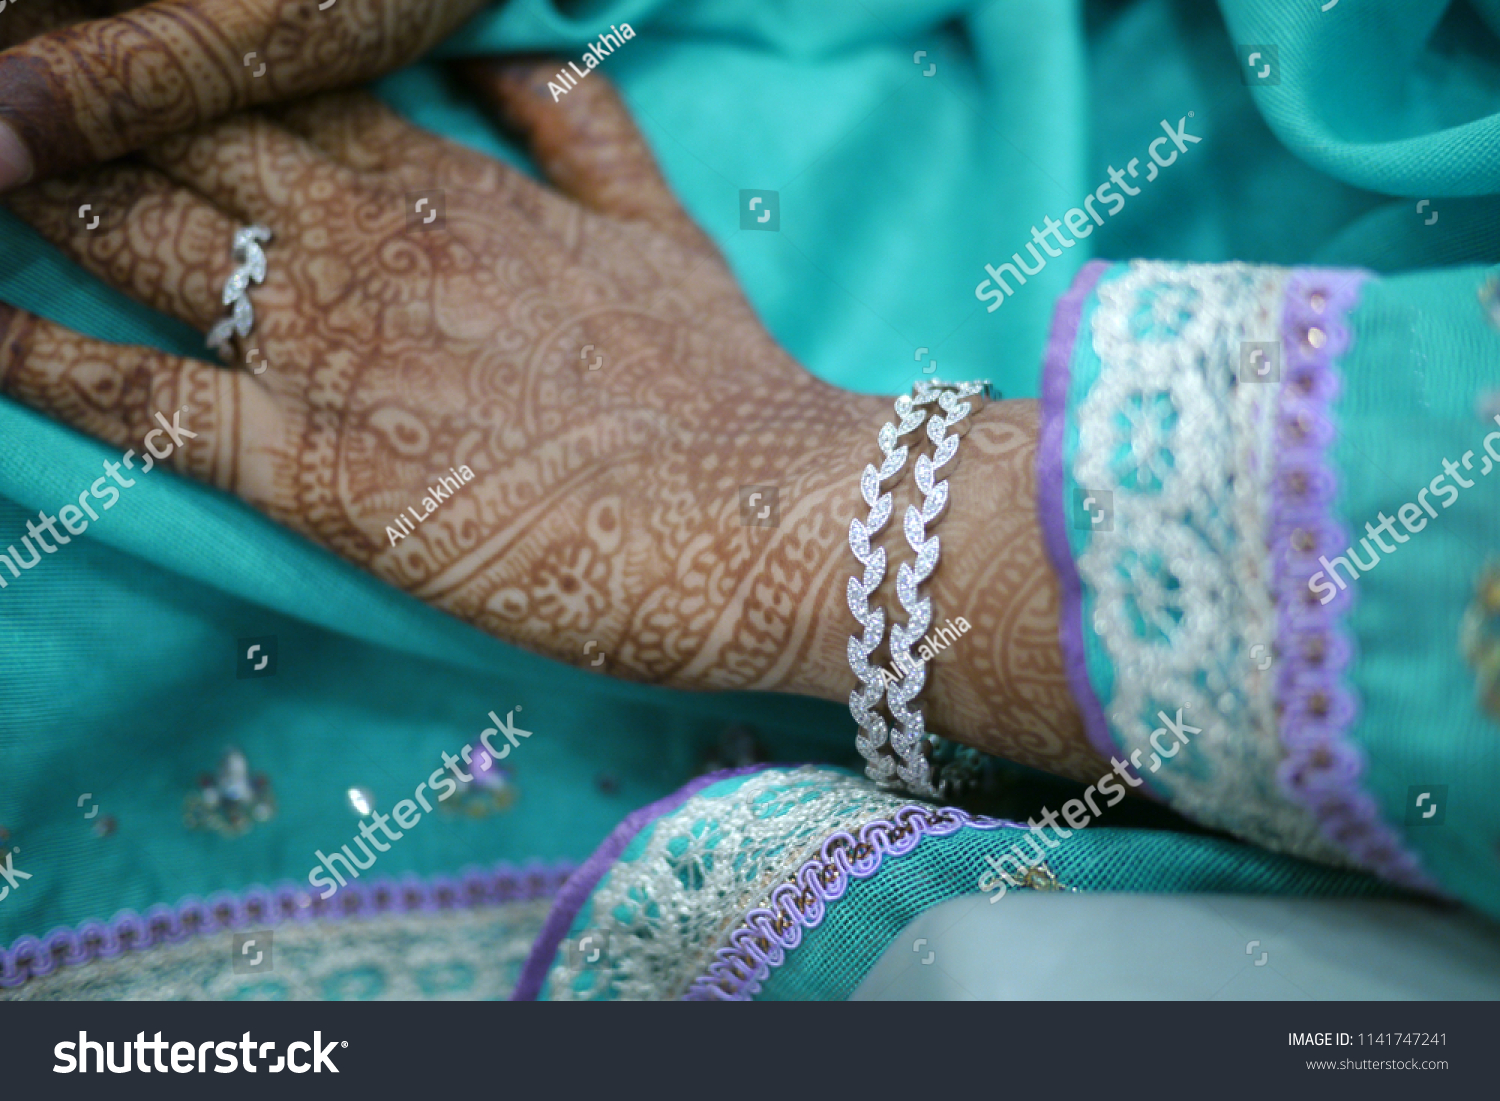 light blue indian wedding dress